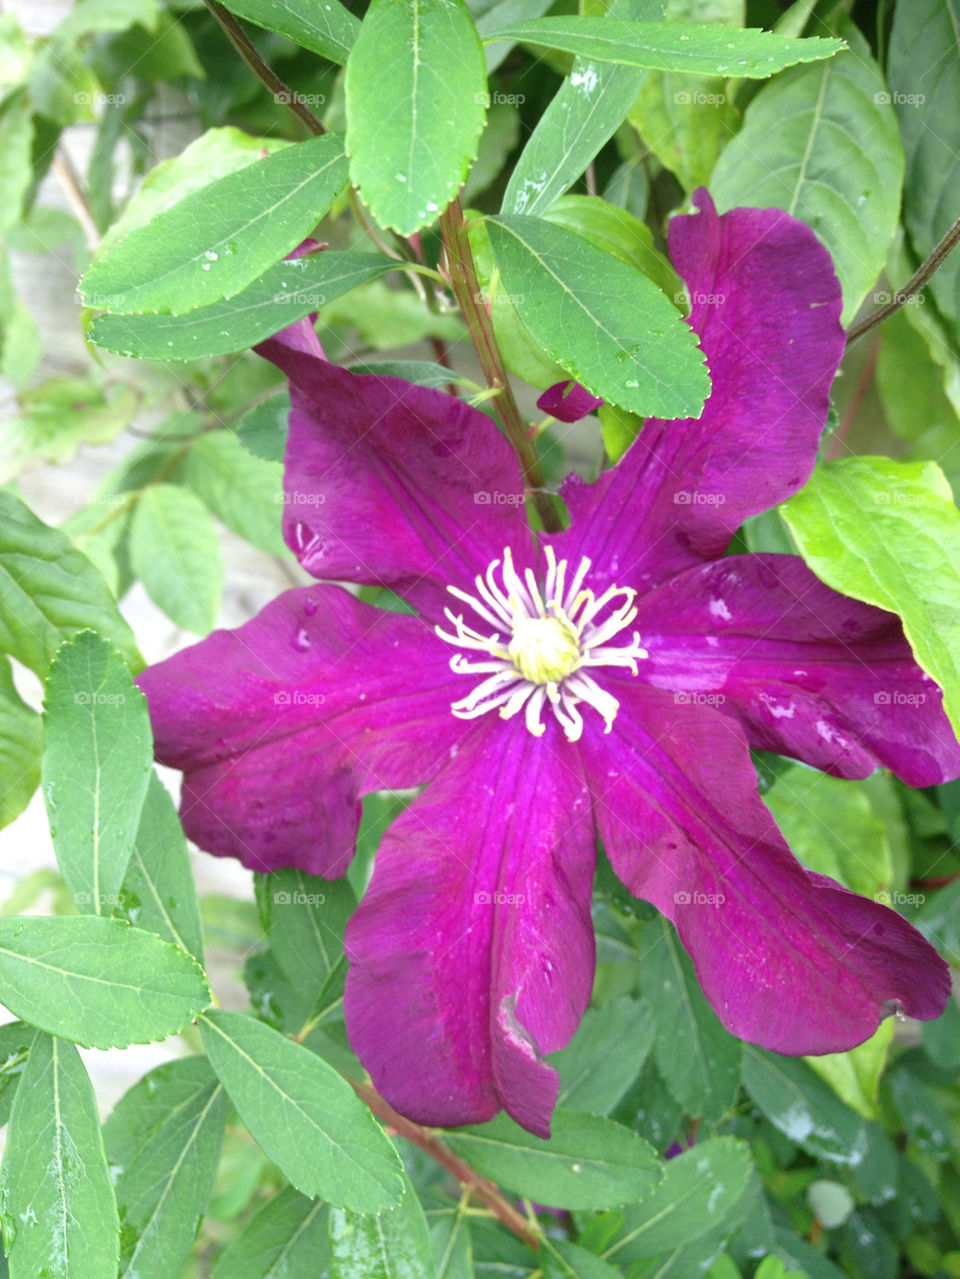 garden flower purple leafs by gsplan